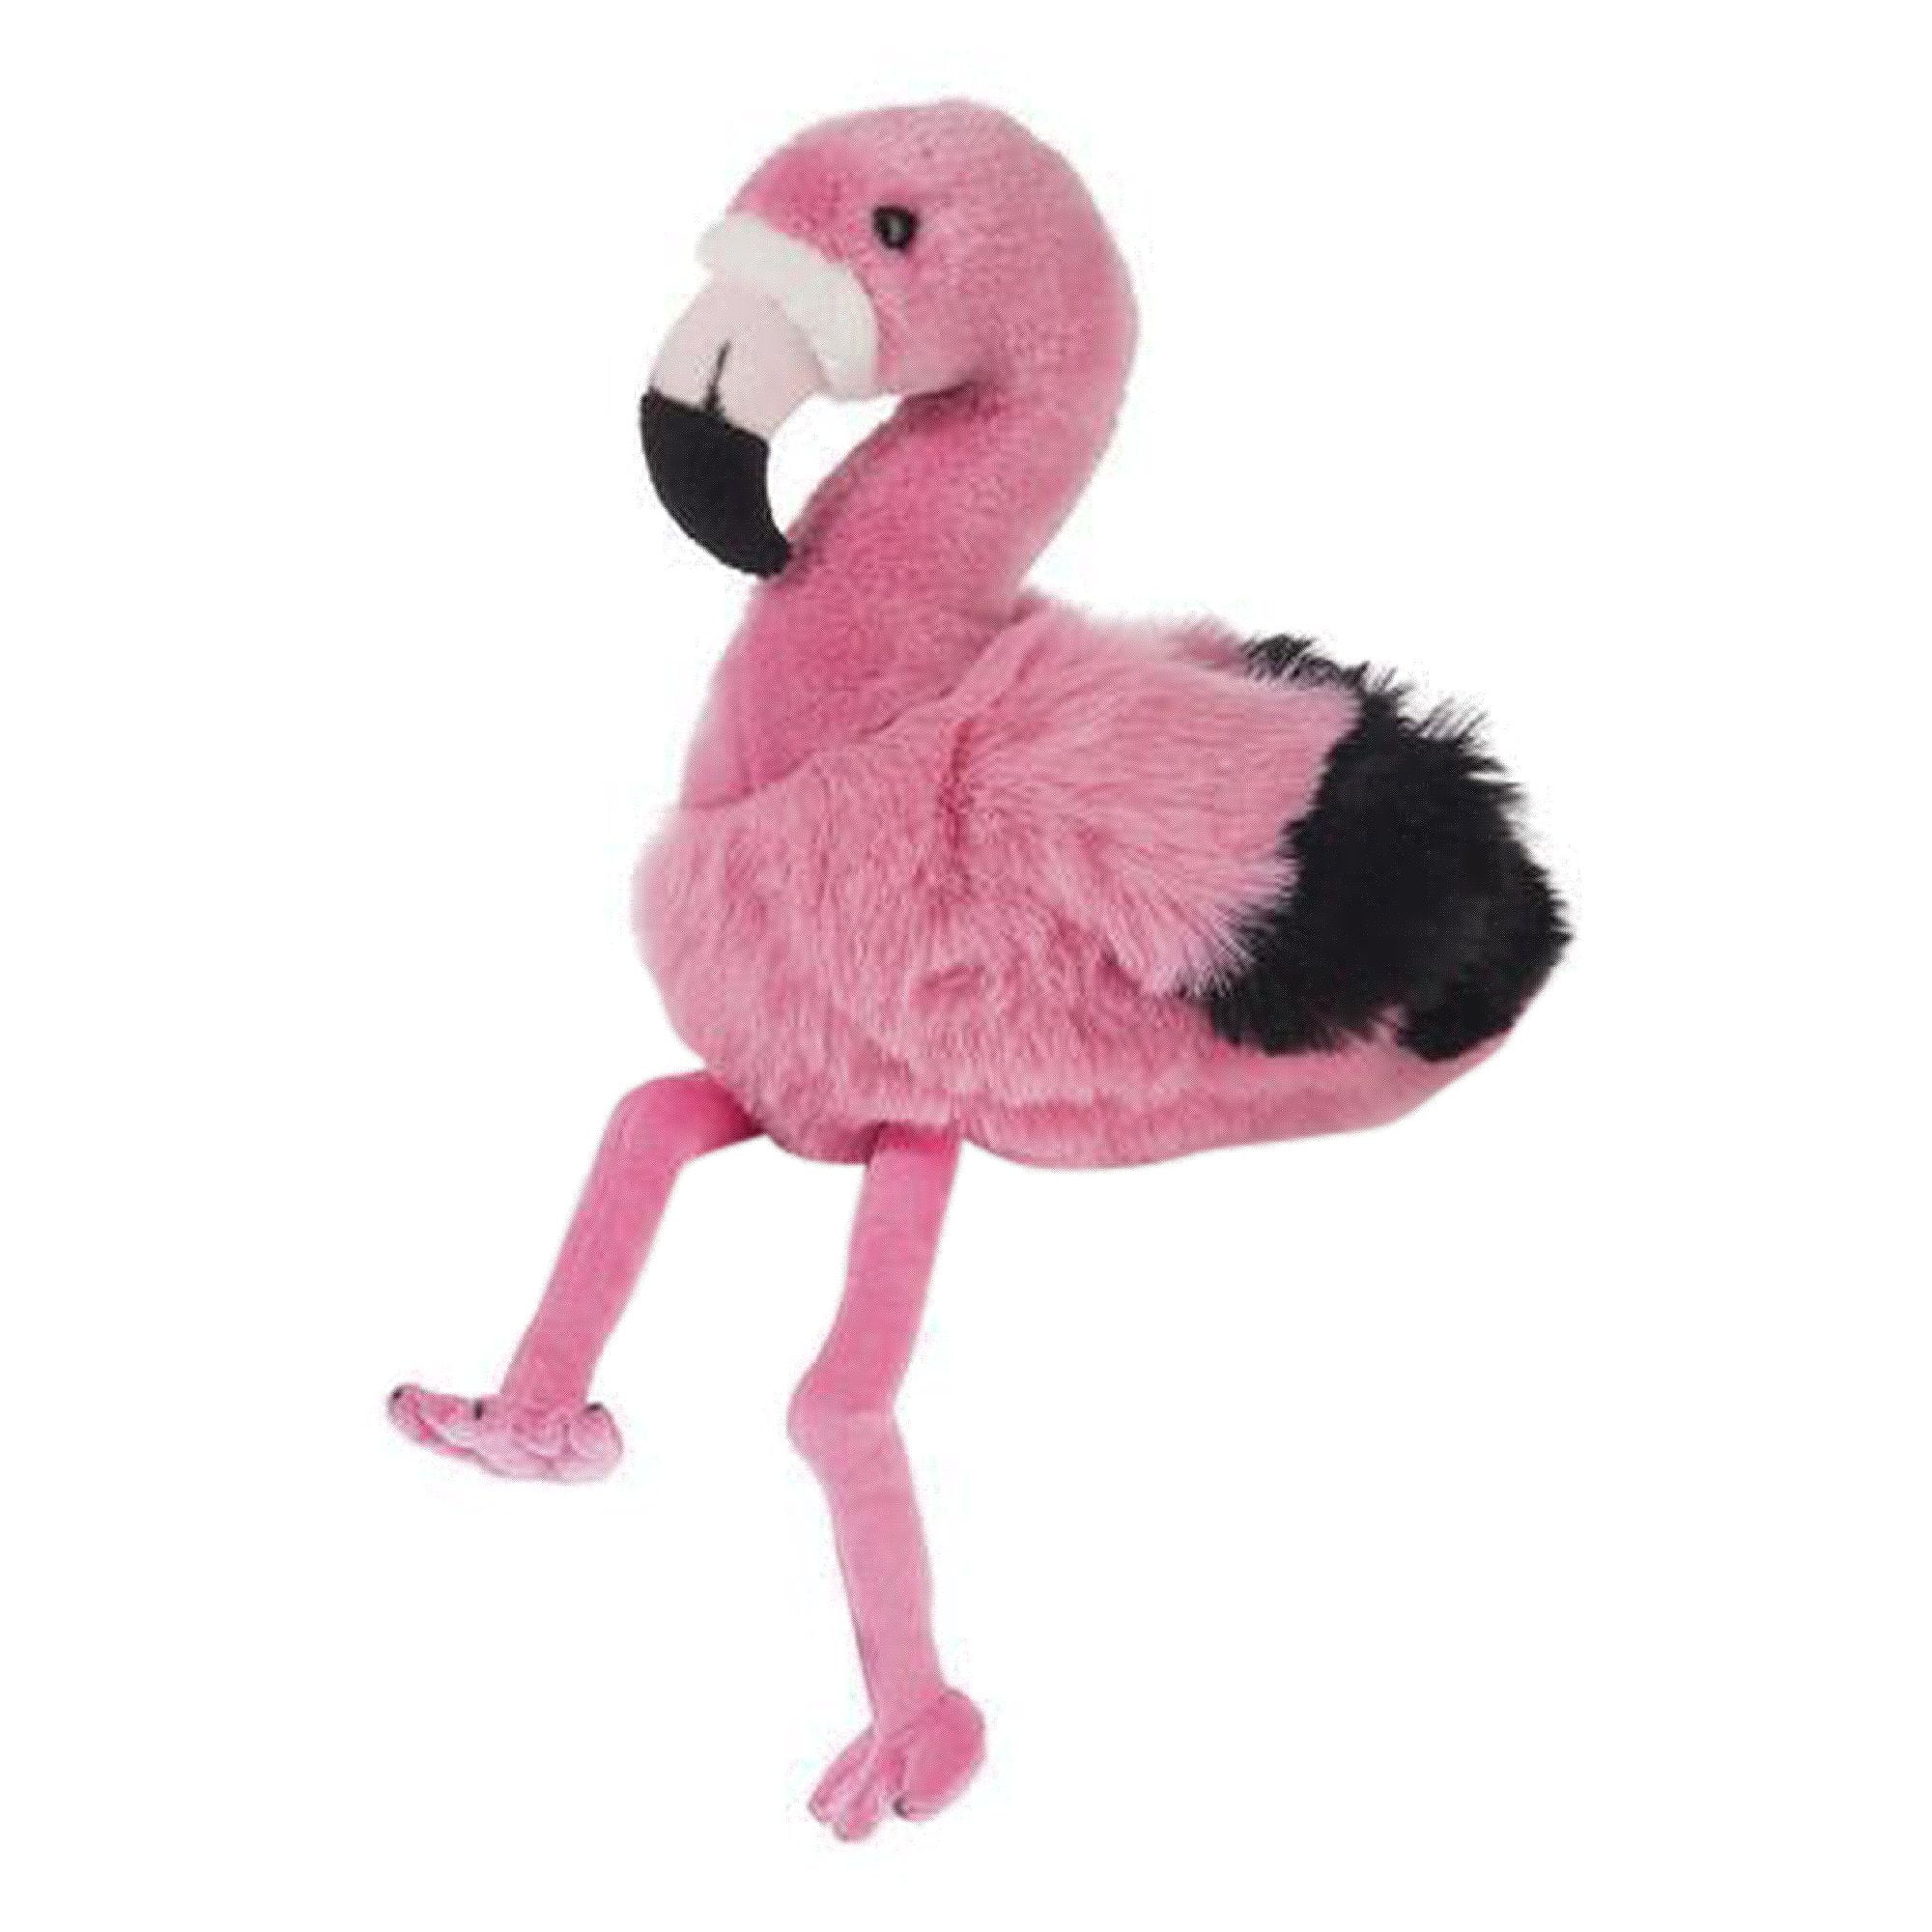 flamingo stuffed animal walmart